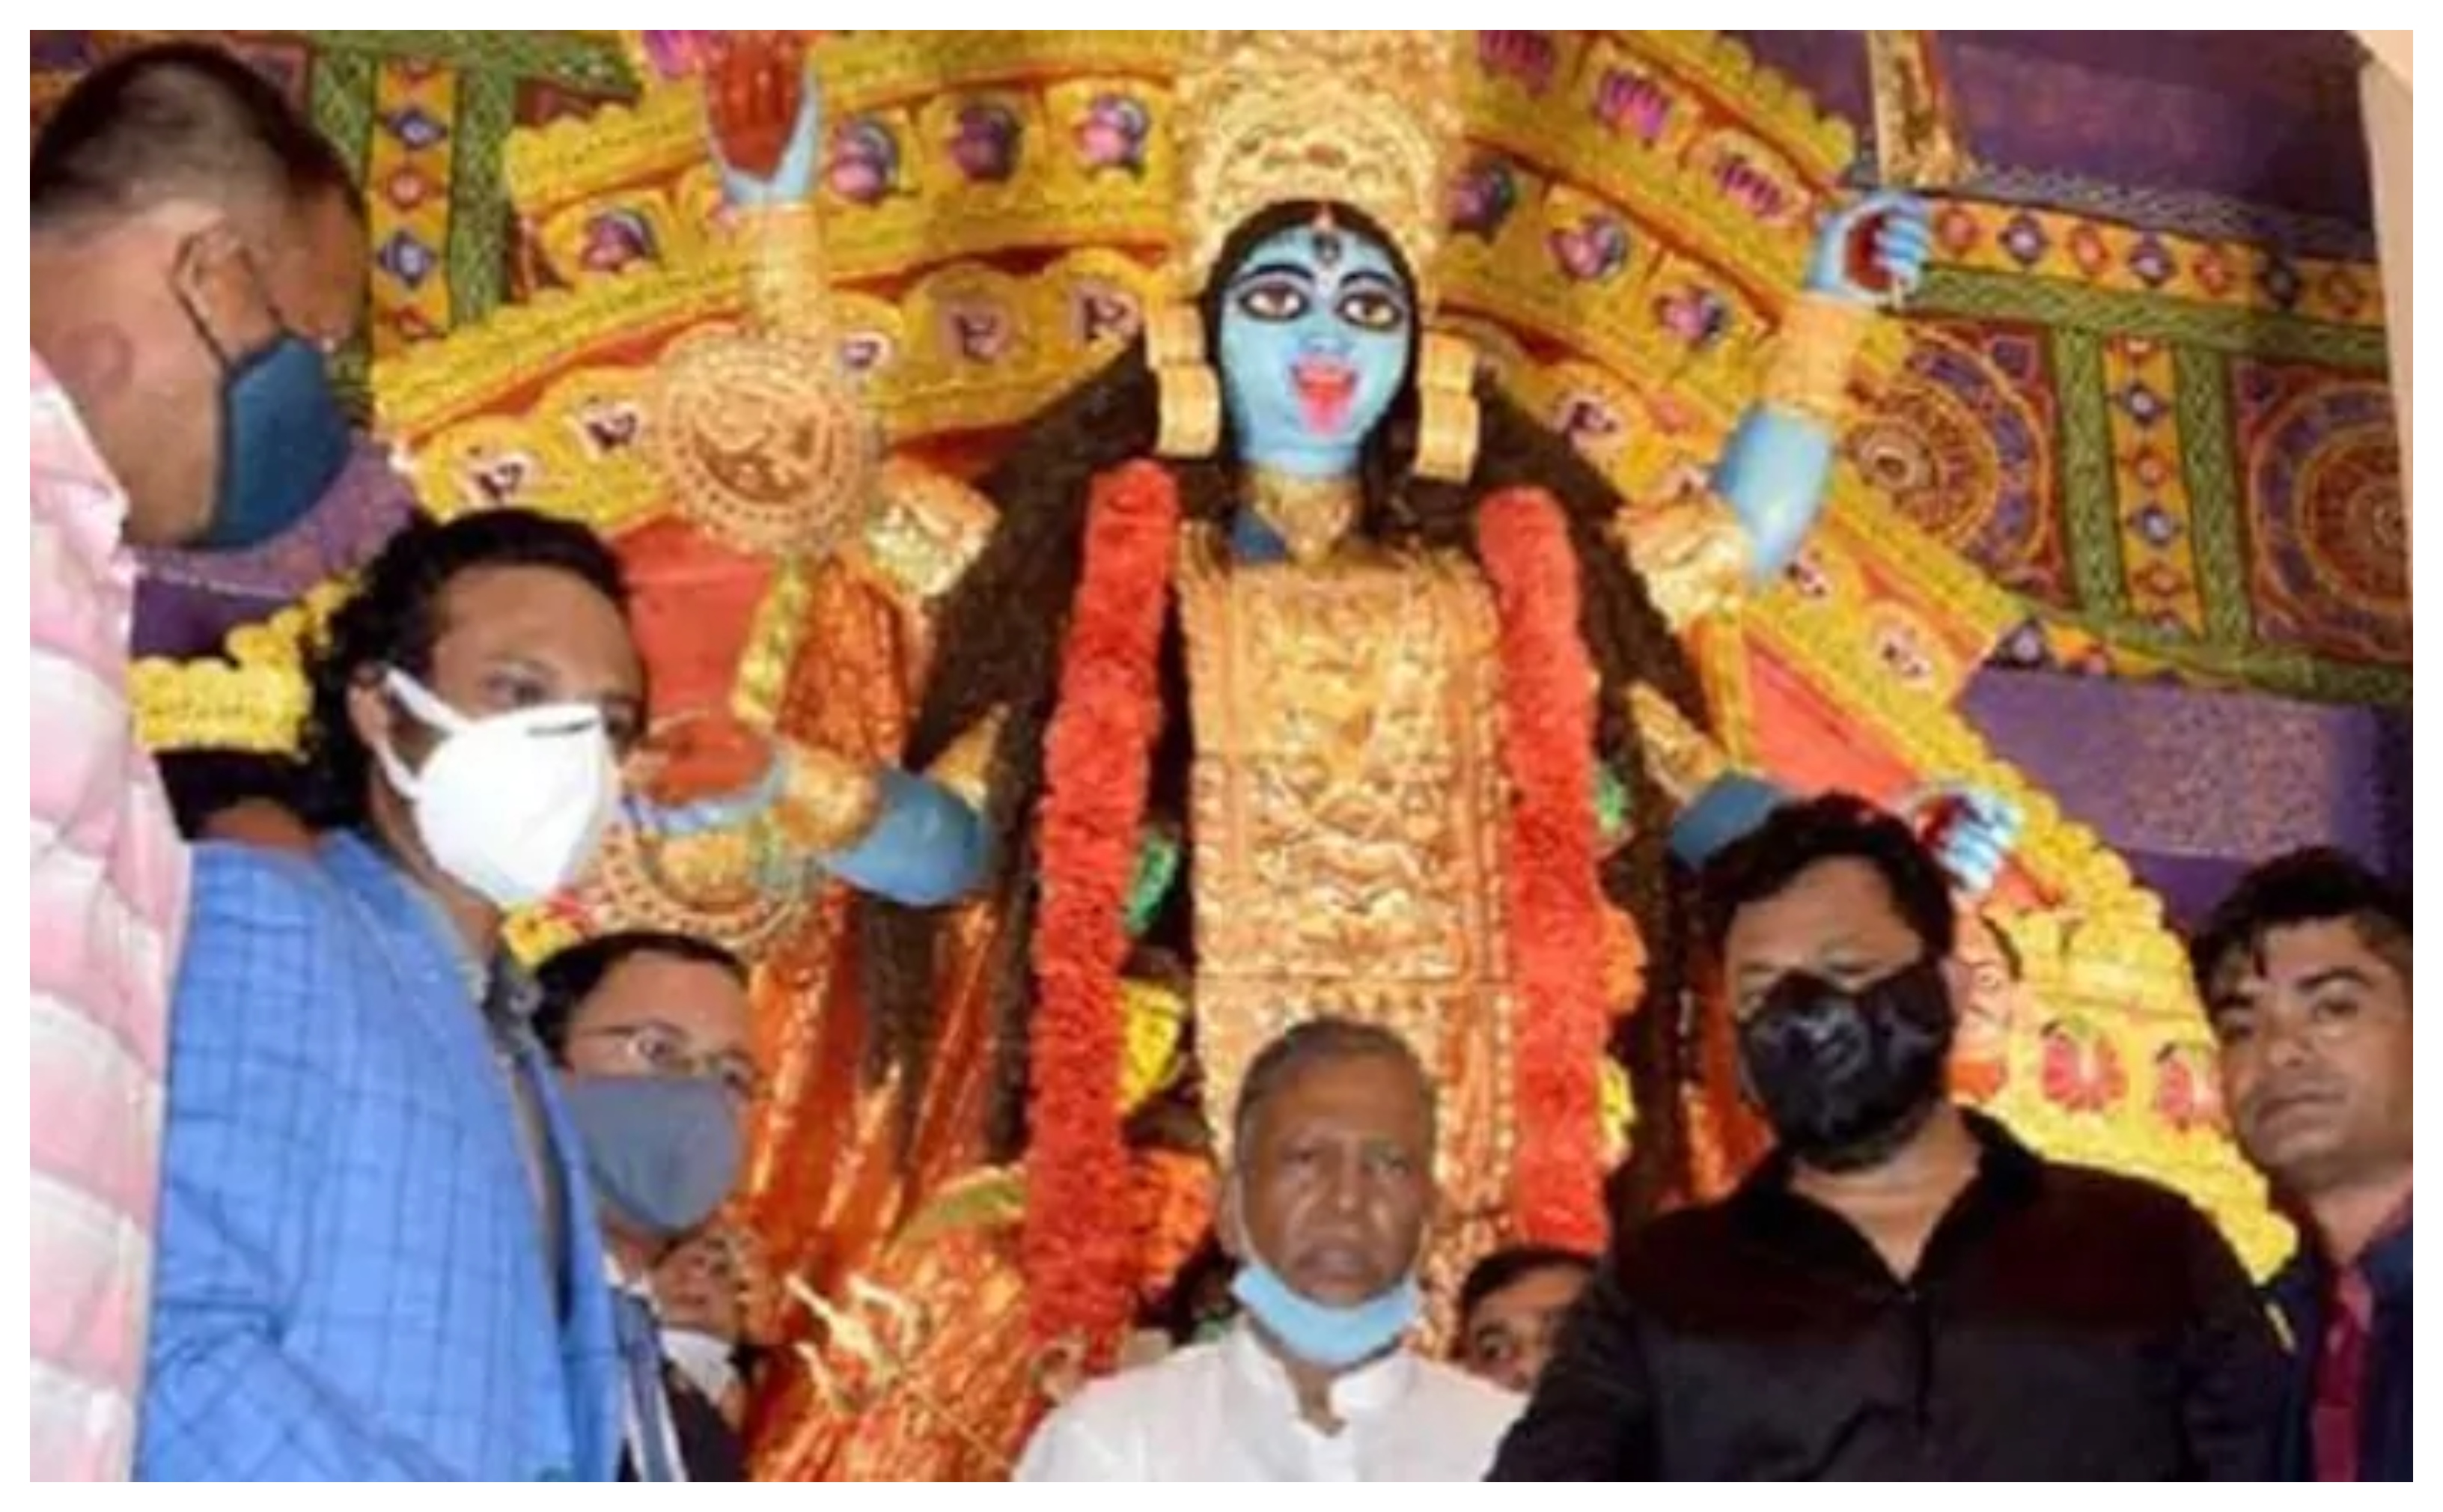 Shakib Al Hasan attending Kali Puja event in Kolkata | Twitter